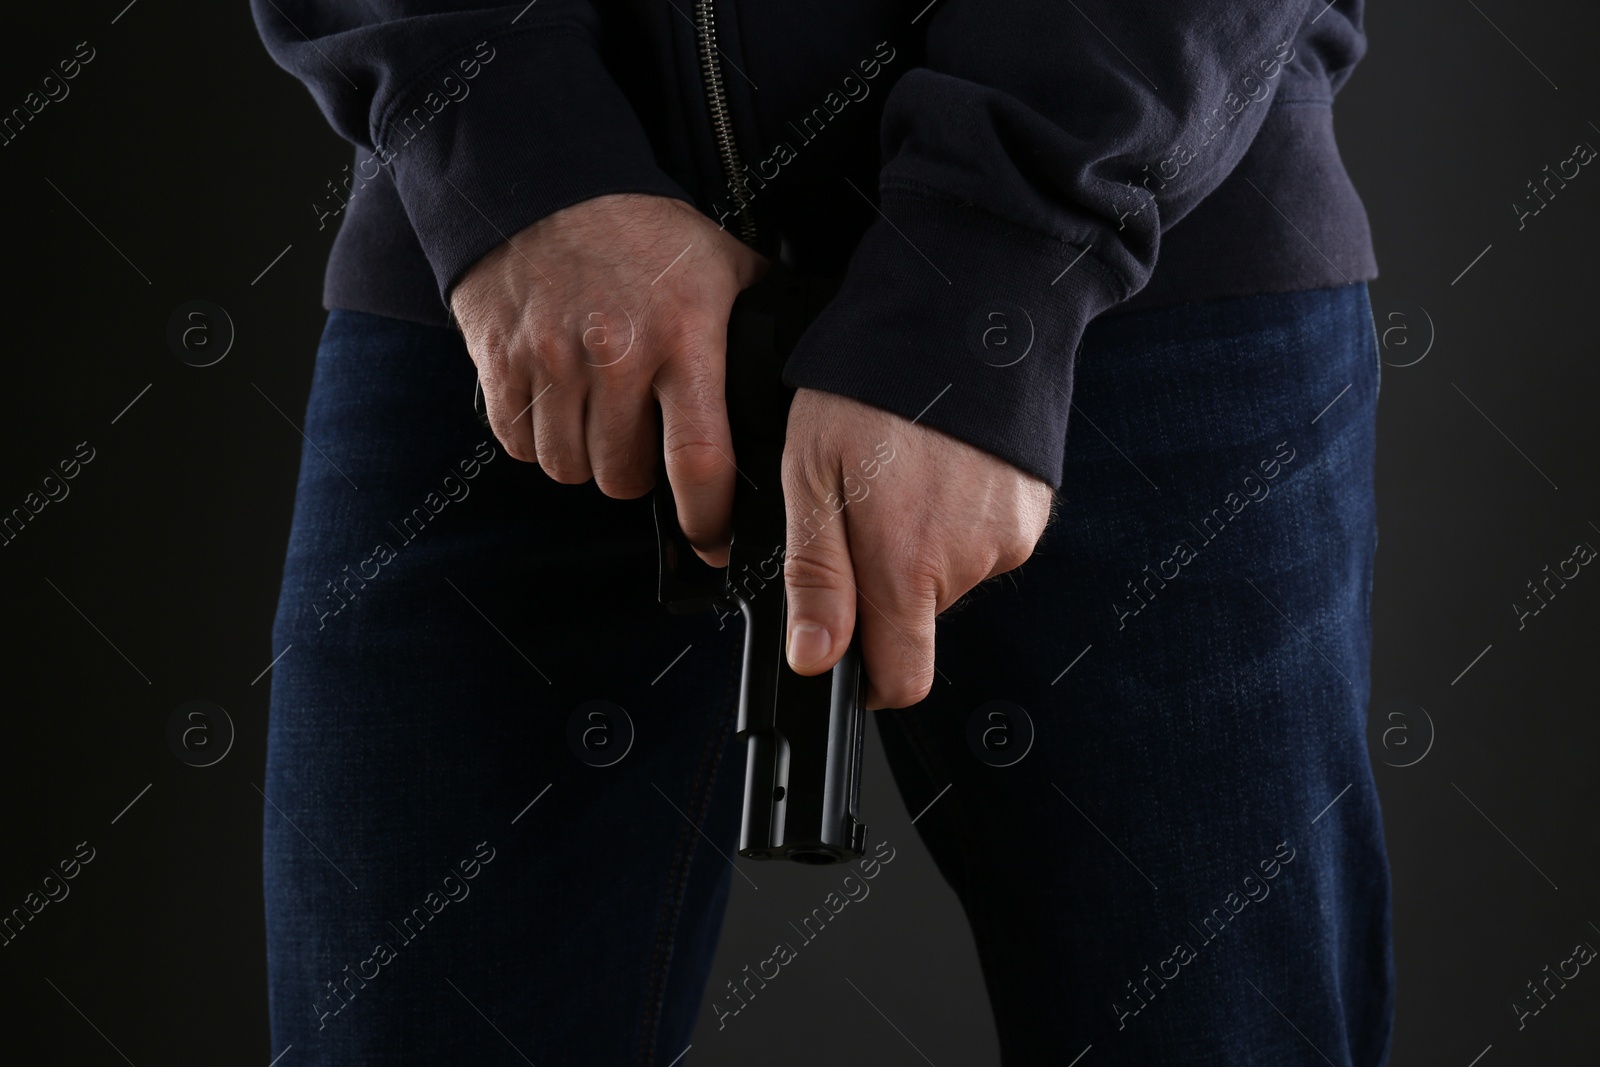 Photo of Man reloading gun on black background, closeup